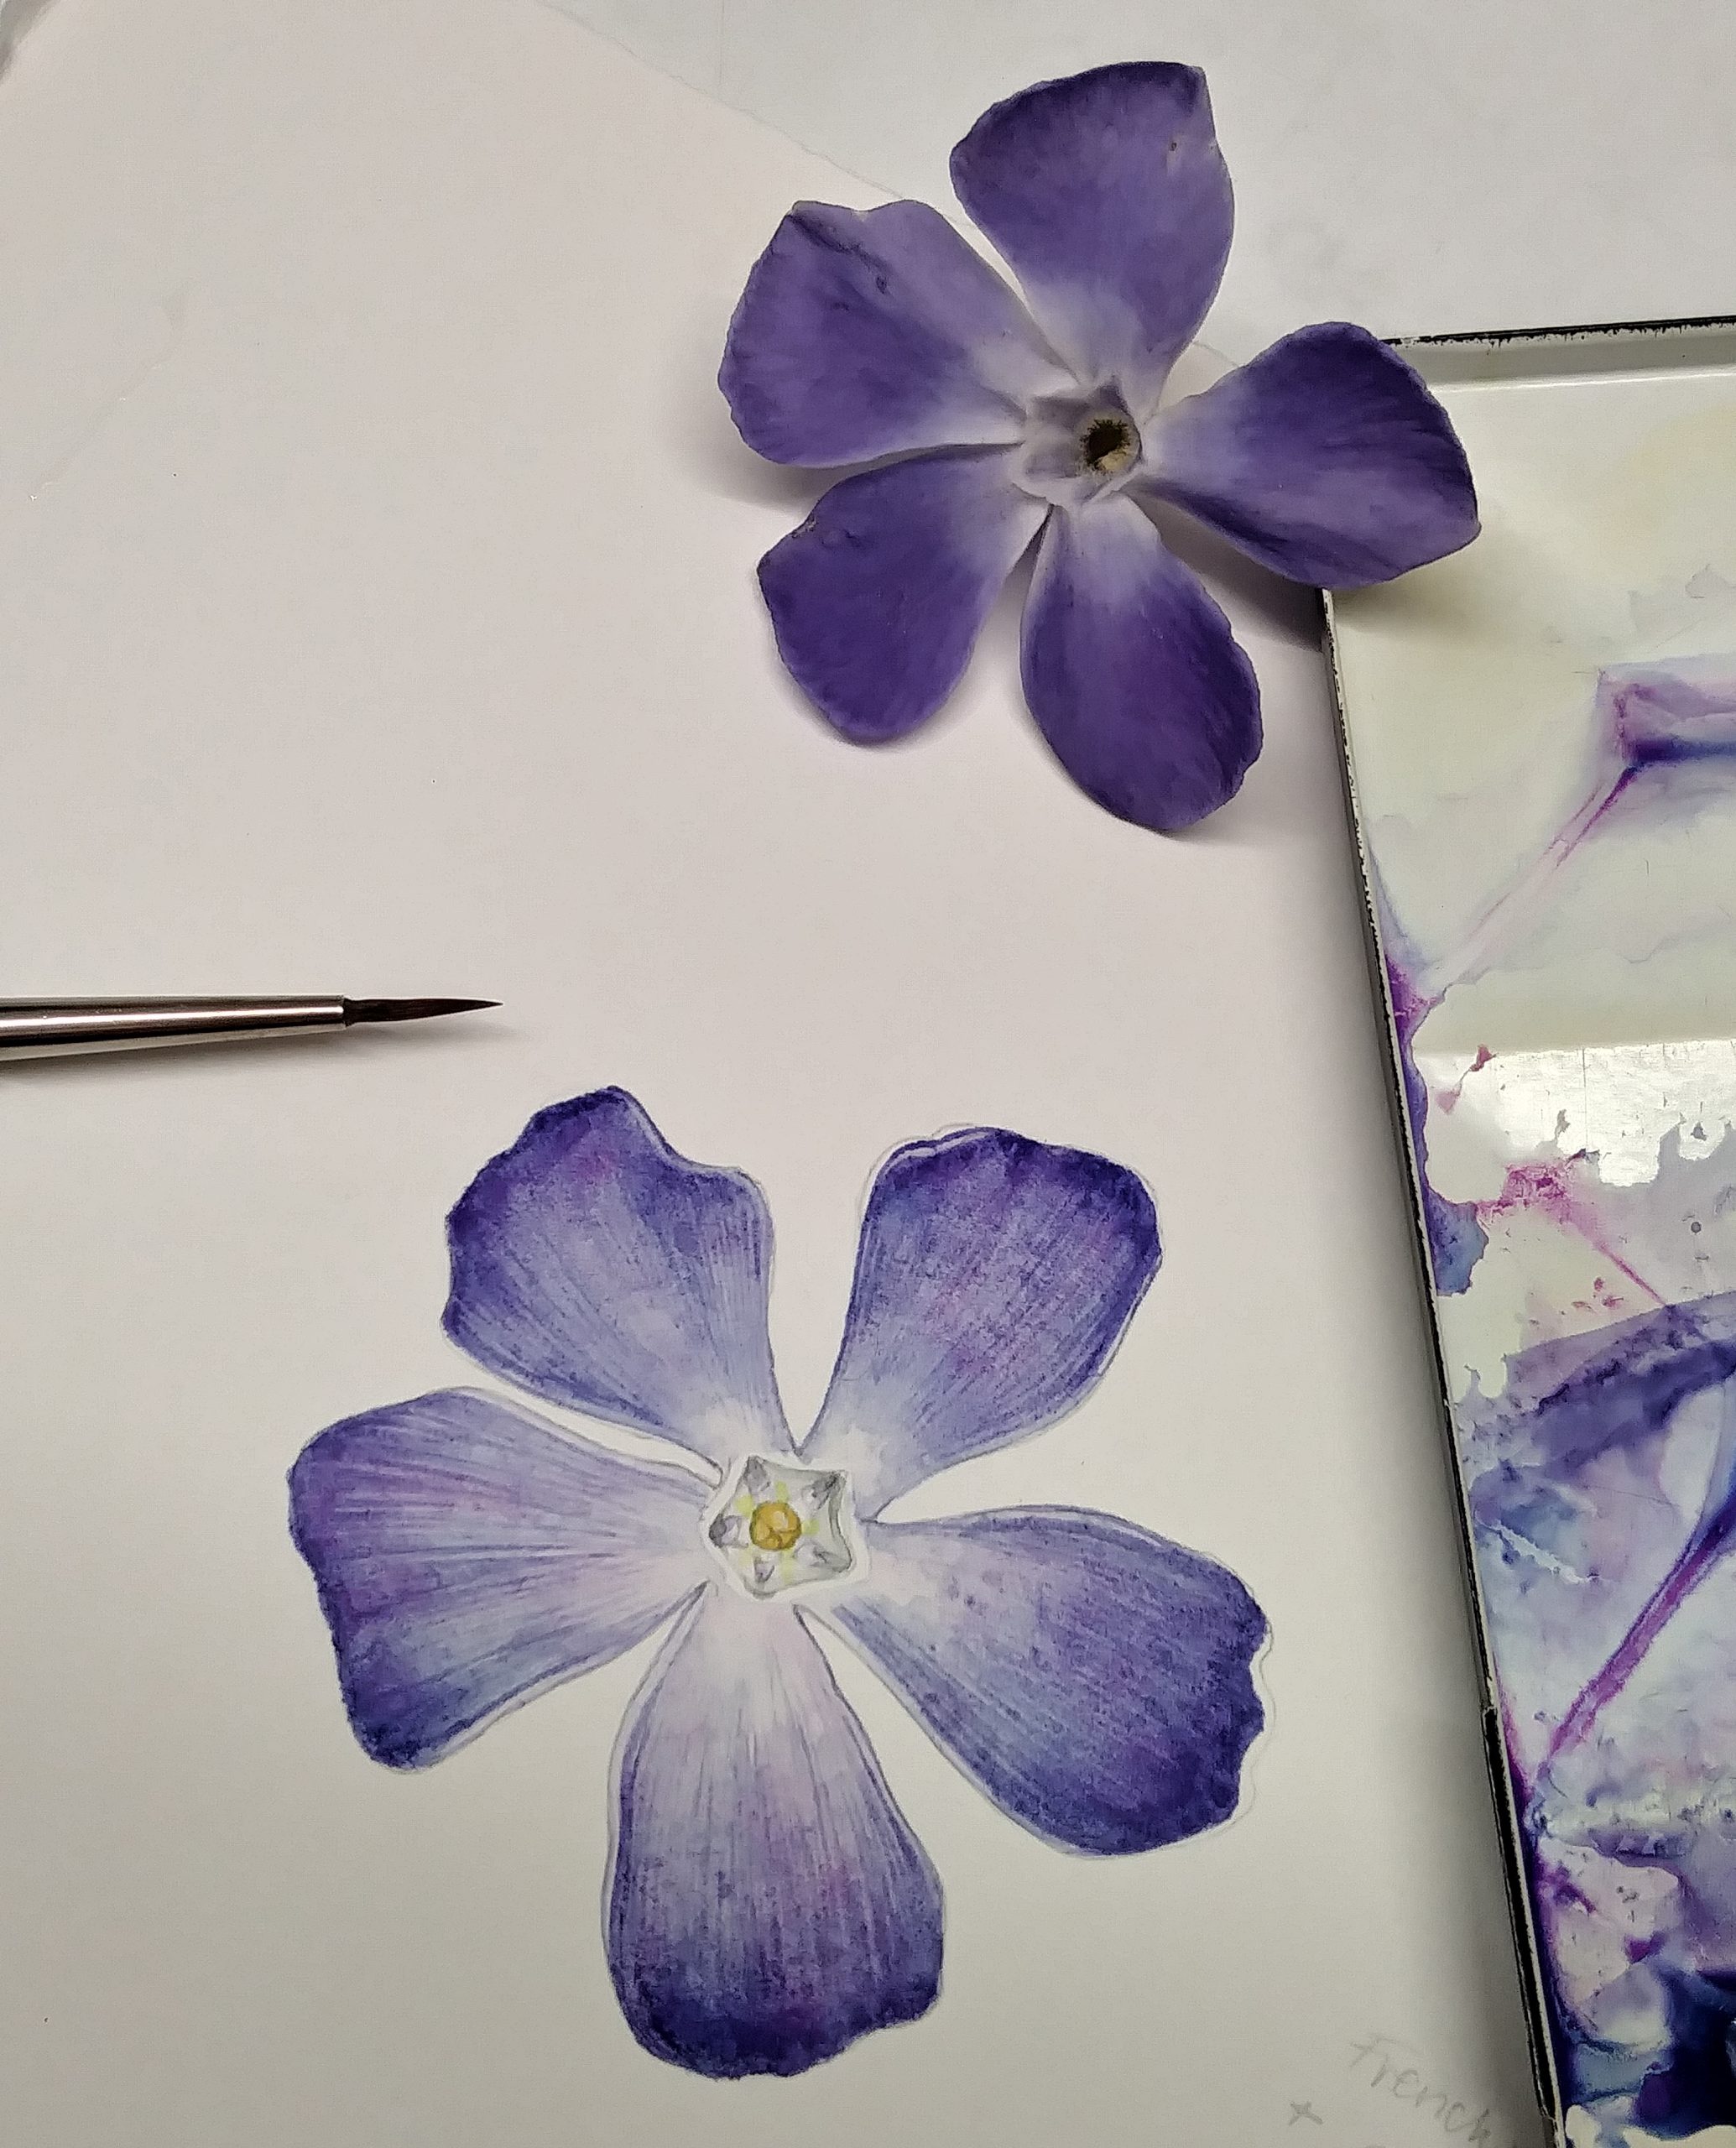 How to Draw a Daisy Flower - HelloArtsy